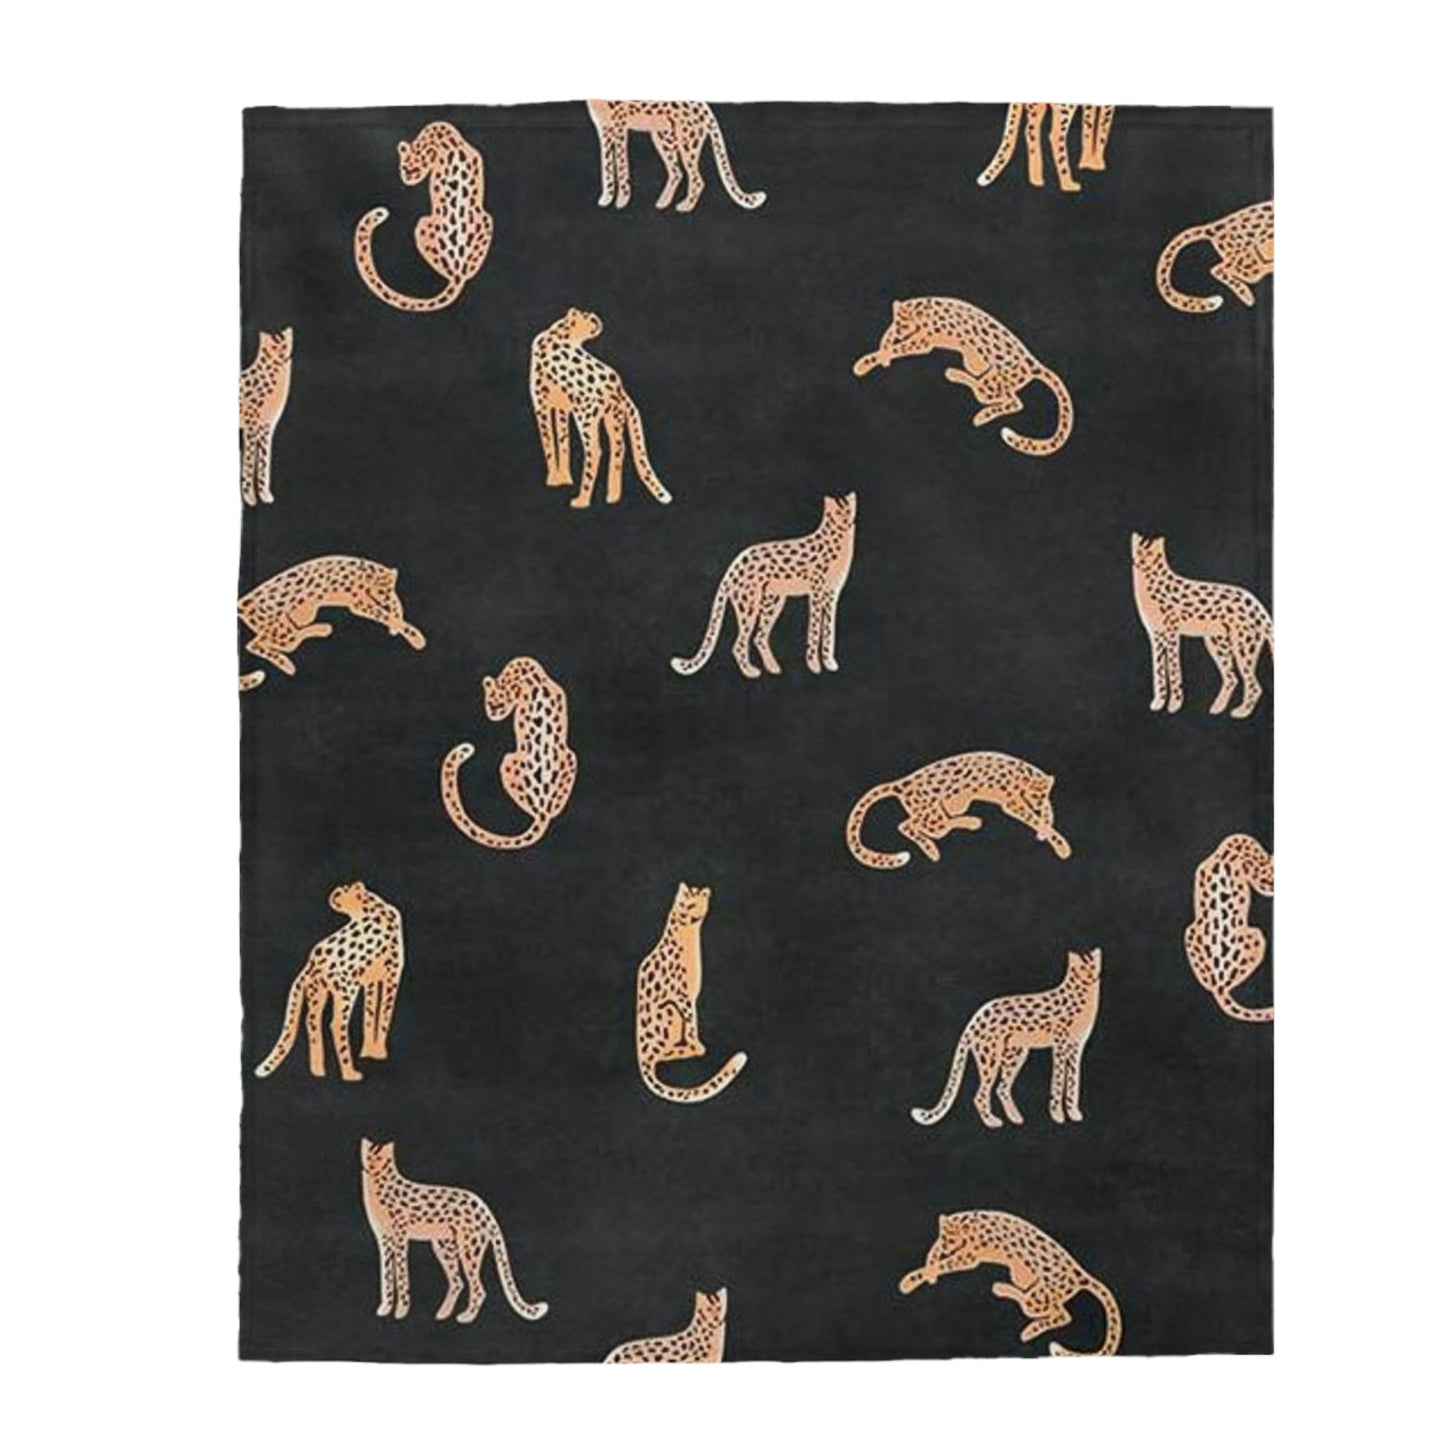 Tiger Plush Blanket